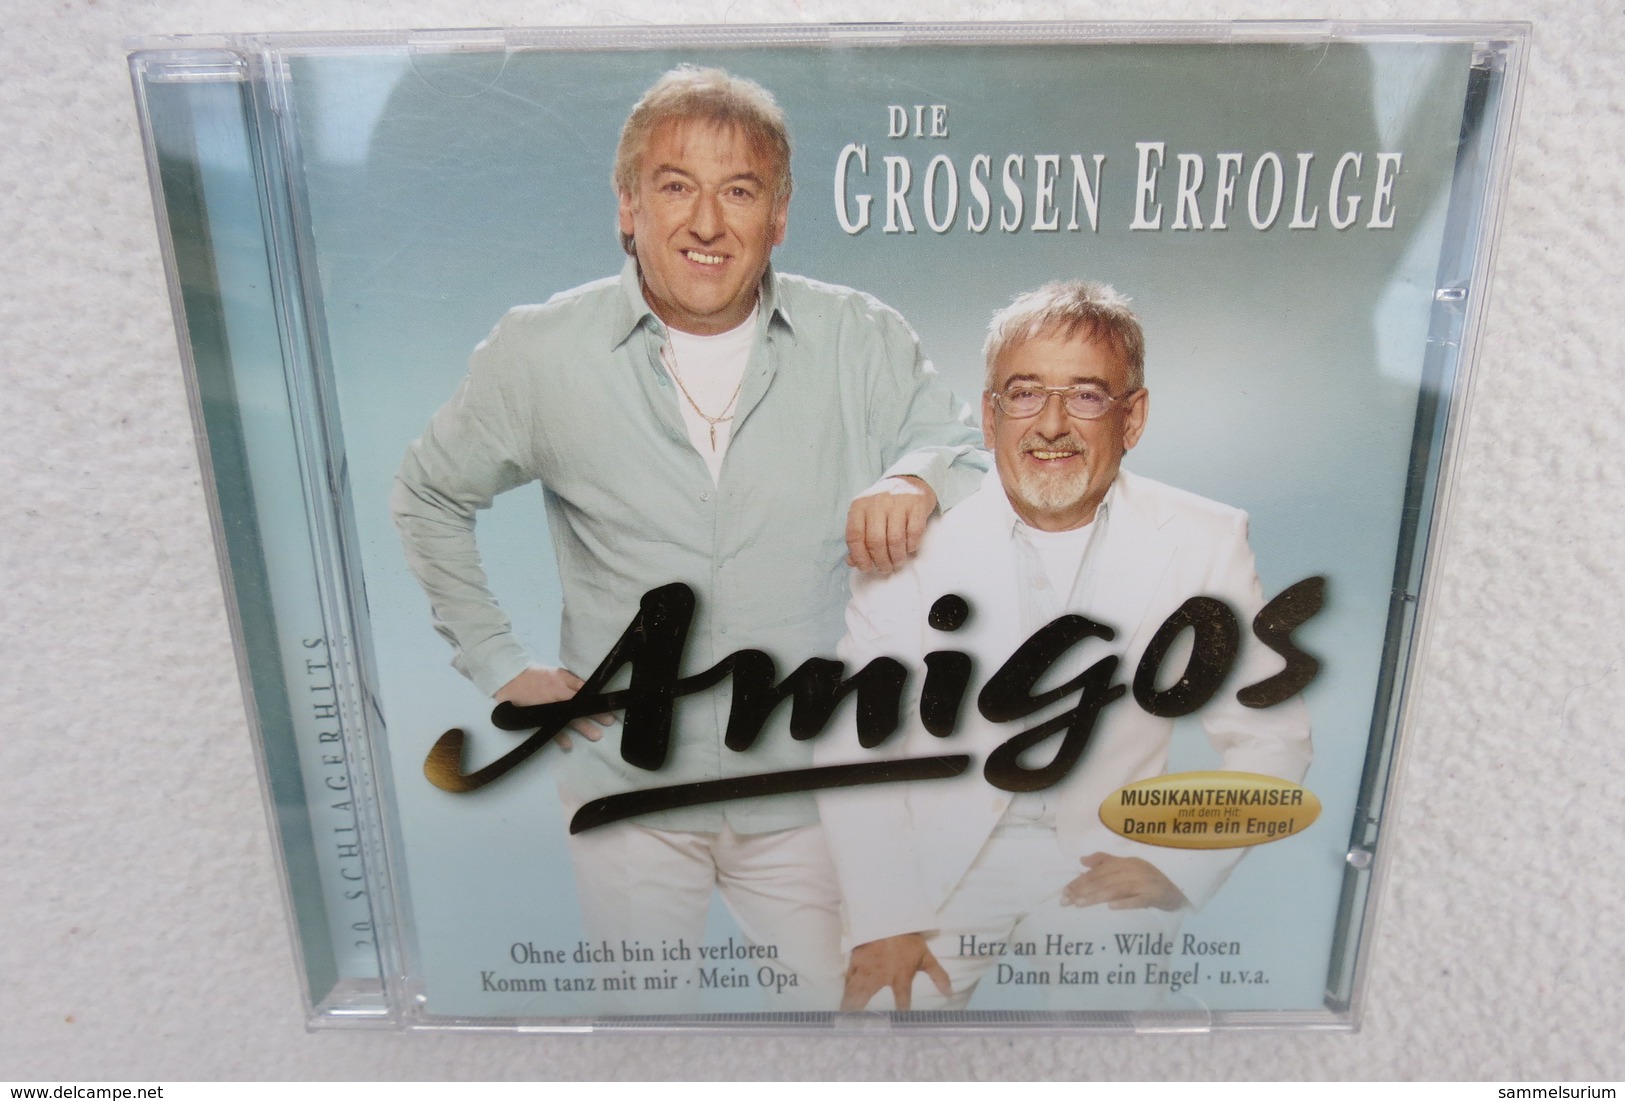 CD "Amigos" Die Grossen Erfolge - Other - German Music